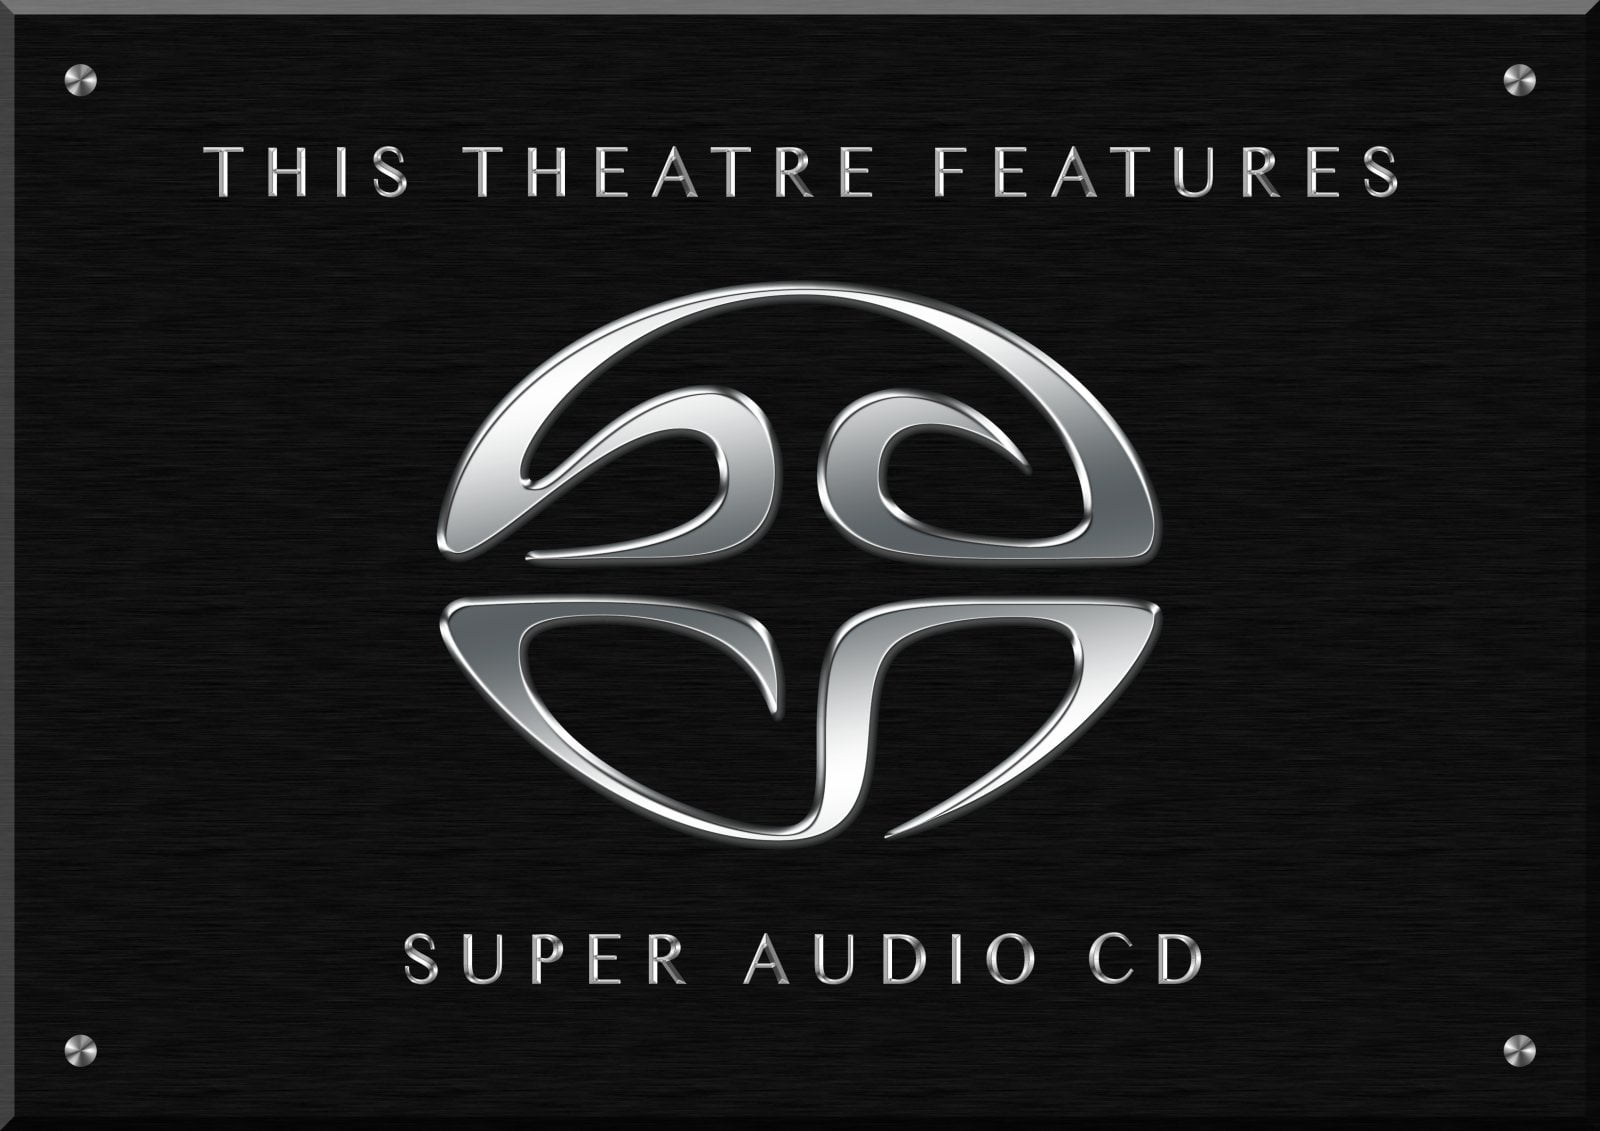 Сд звуки. SACD логотип. SACD диски. Super Audio CD. SACD — super Audio CD.